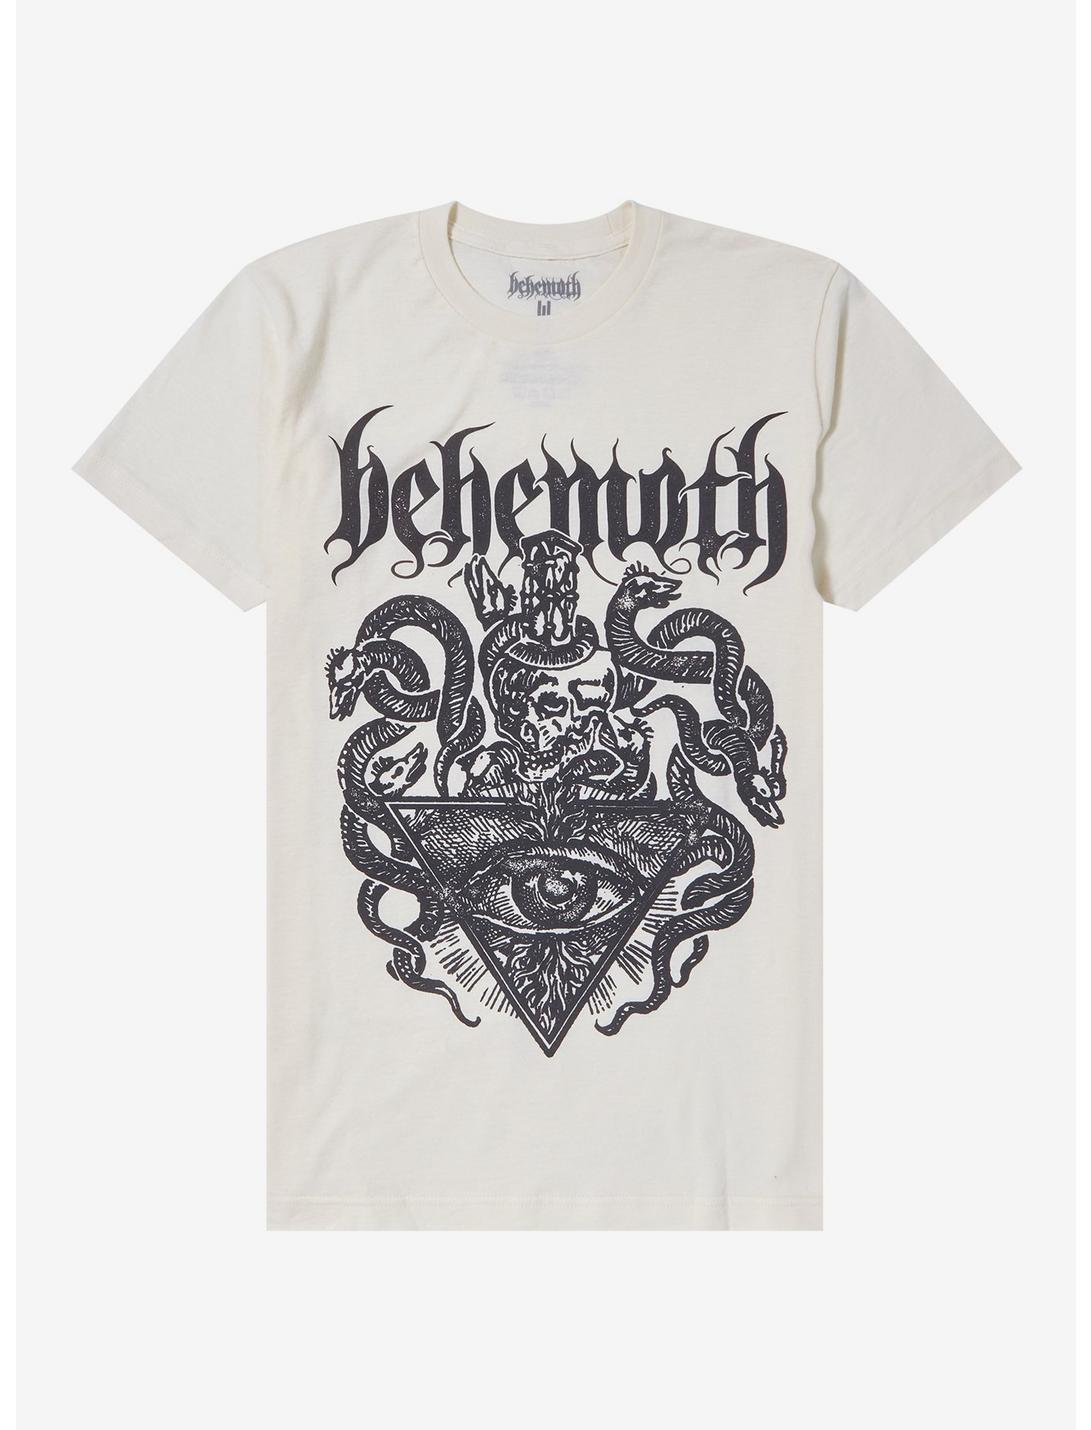 Behemoth Serpents Boyfriend Fit Girls T-Shirt, CREAM, hi-res